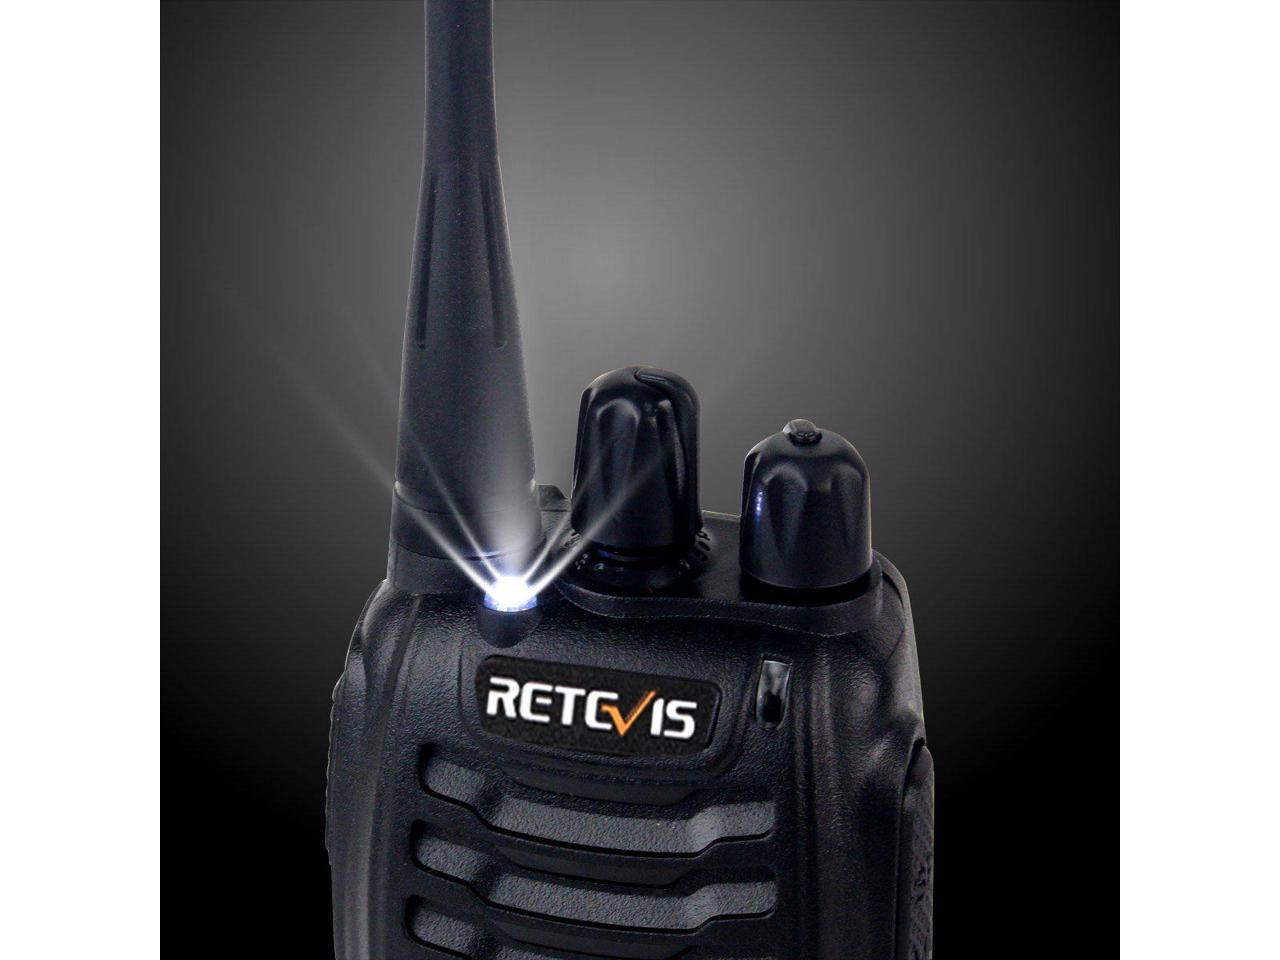 4 Pack Retevis H-777 2 Way Radio Flashlight Rechargeable Handheld Radio 16CH Walkie Talkies with Speaker Mic 